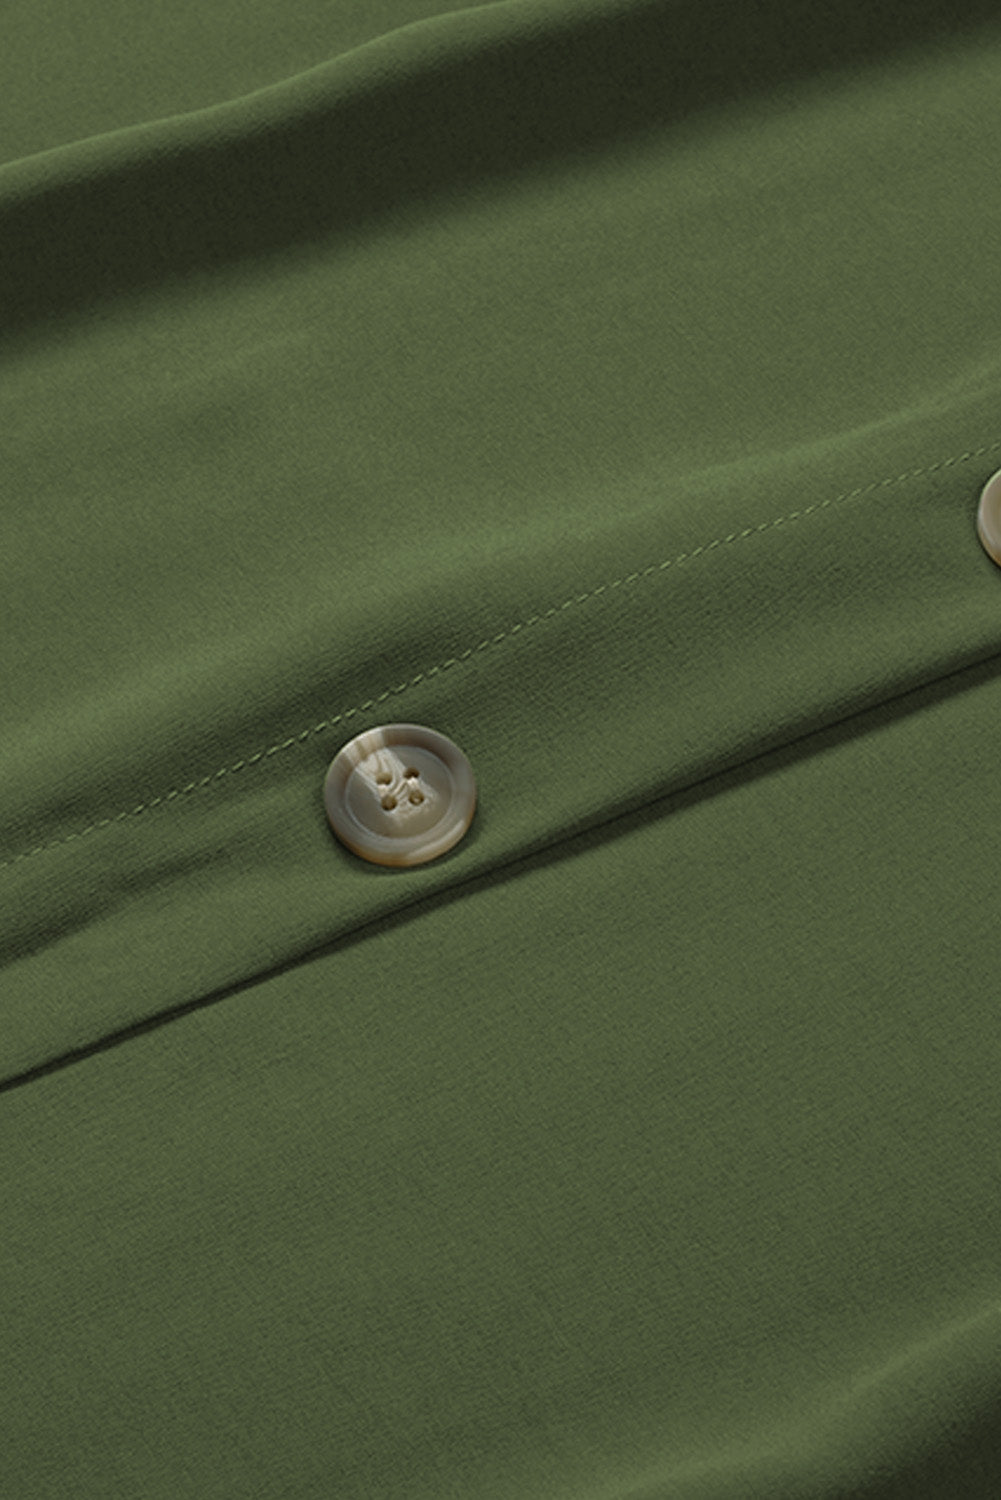 Green Buttoned Slip Dress